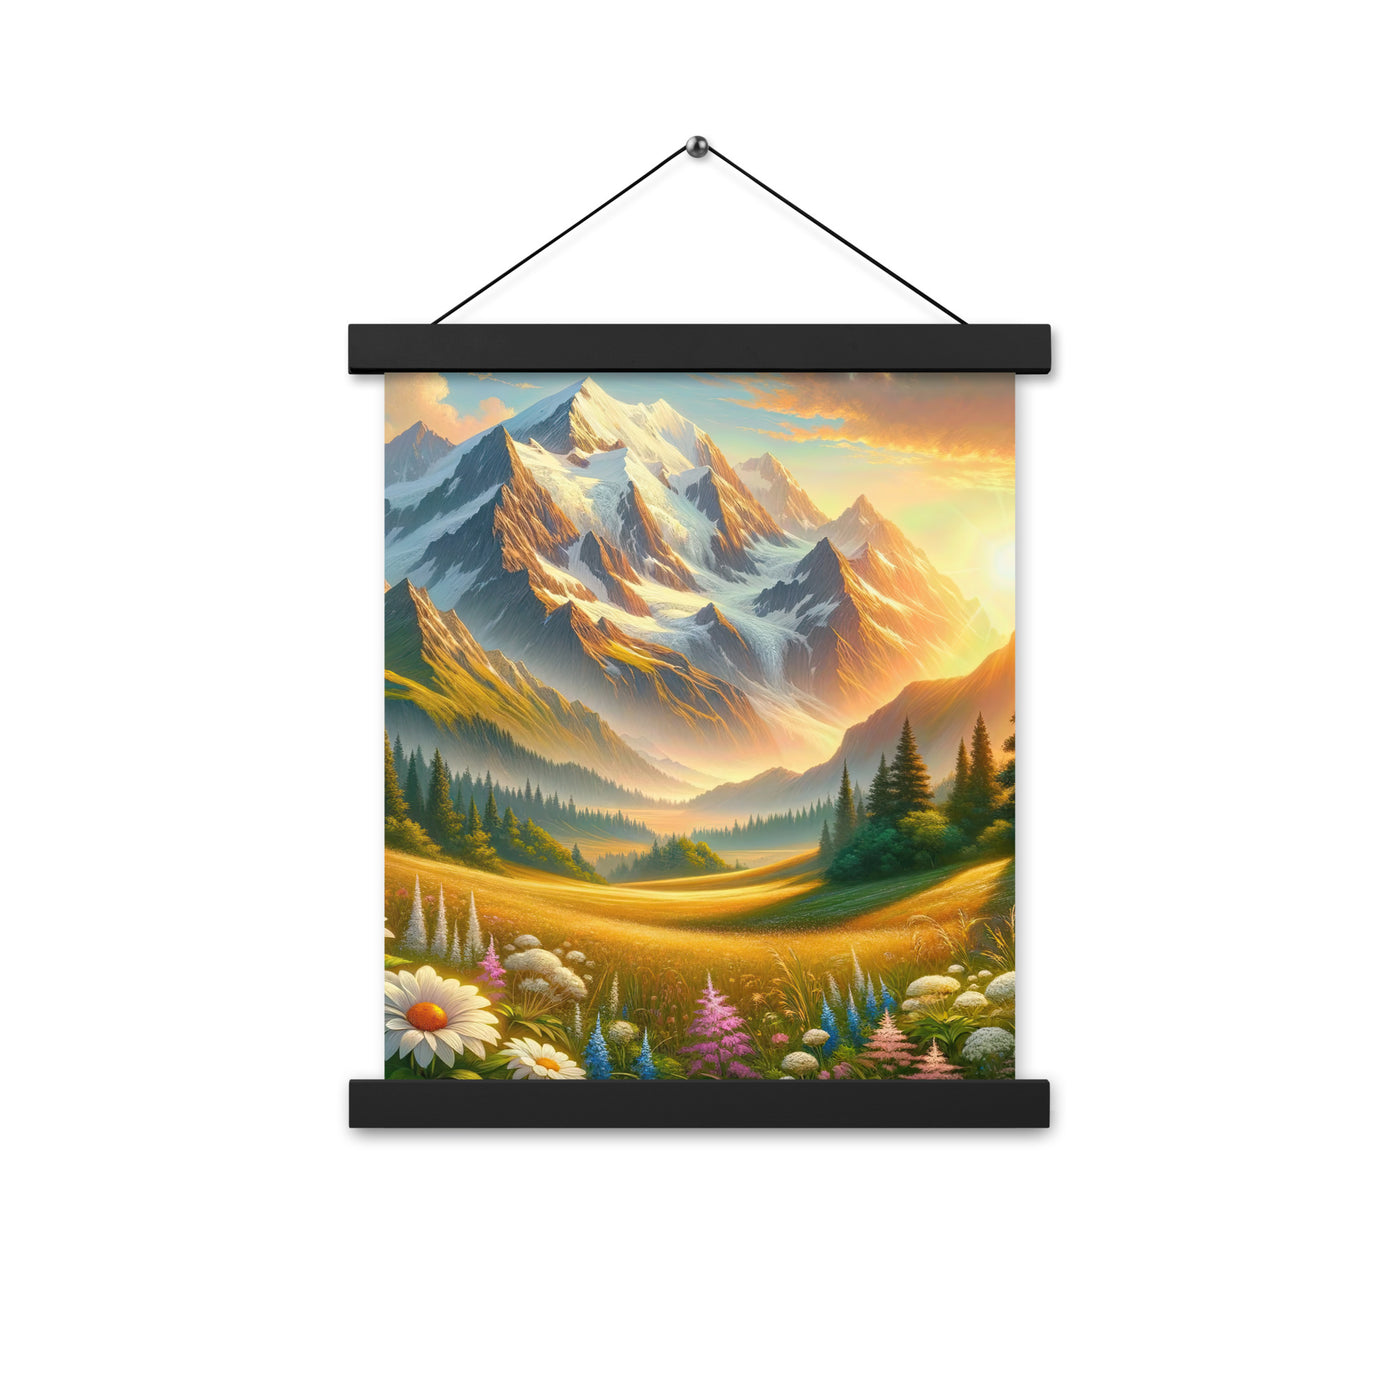 Heitere Alpenschönheit: Schneeberge und Wildblumenwiesen - Premium Poster mit Aufhängung berge xxx yyy zzz 27.9 x 35.6 cm